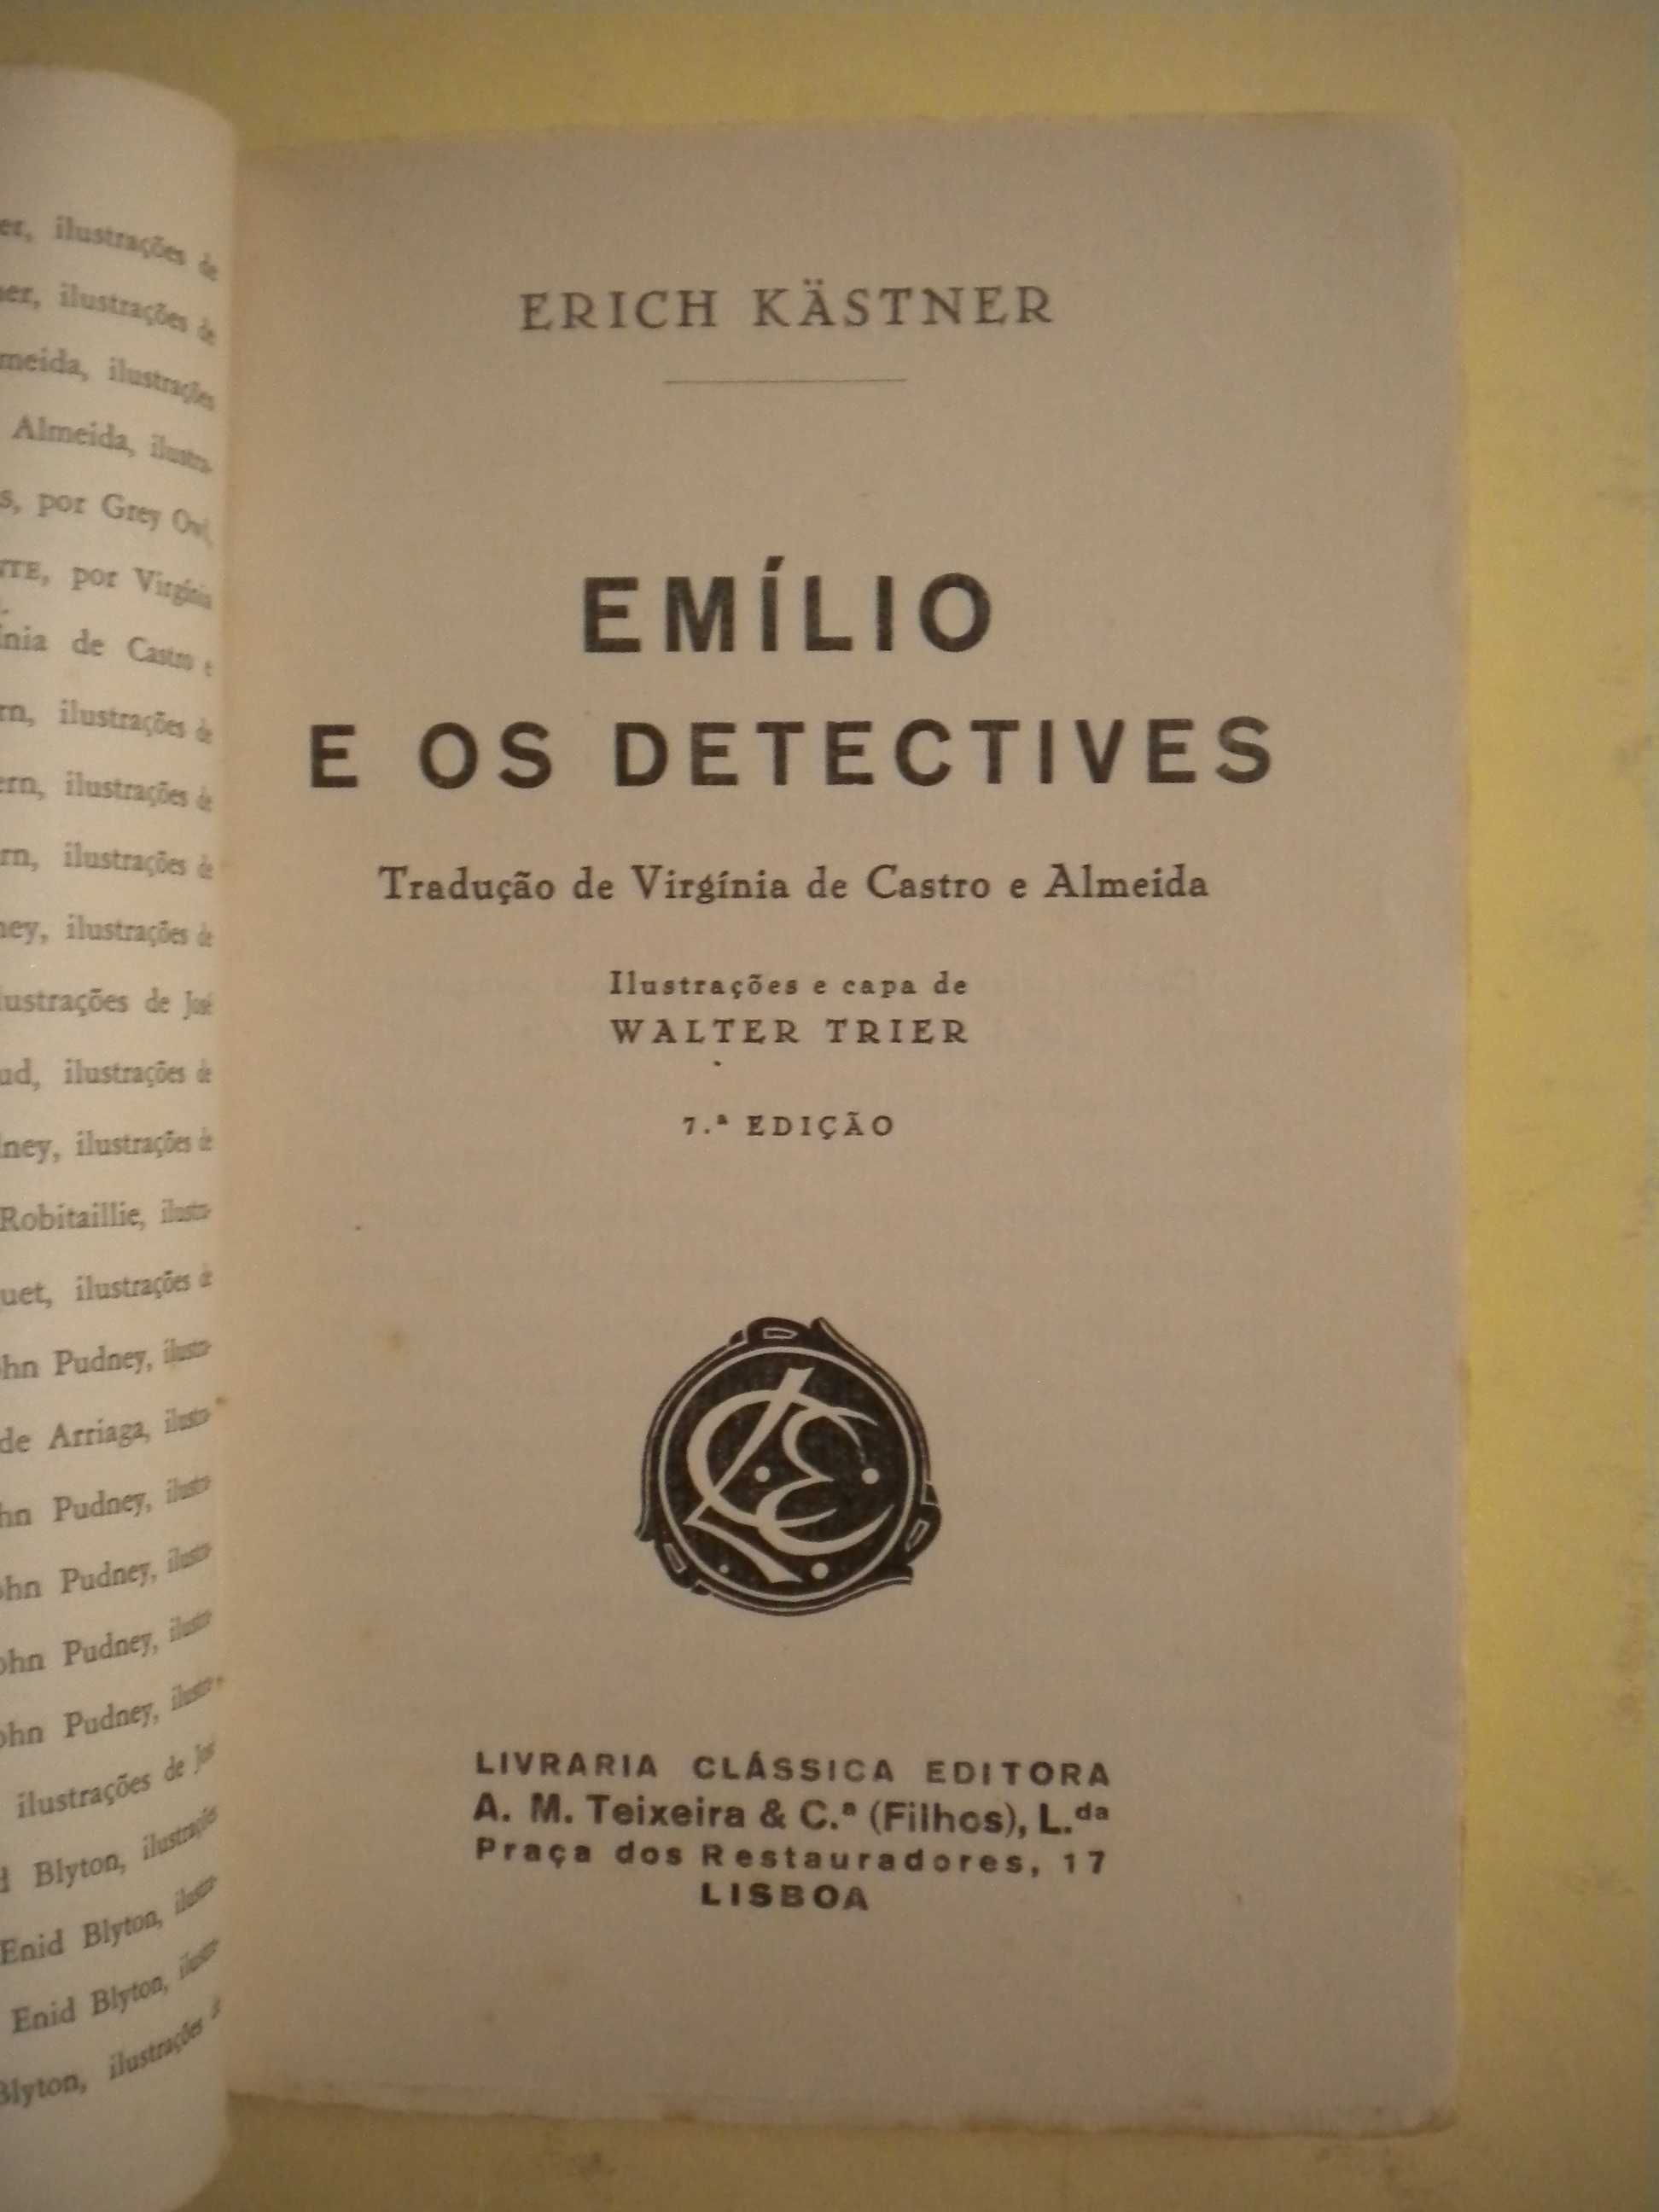 Emílio e os Detectives
de Erich Kästner